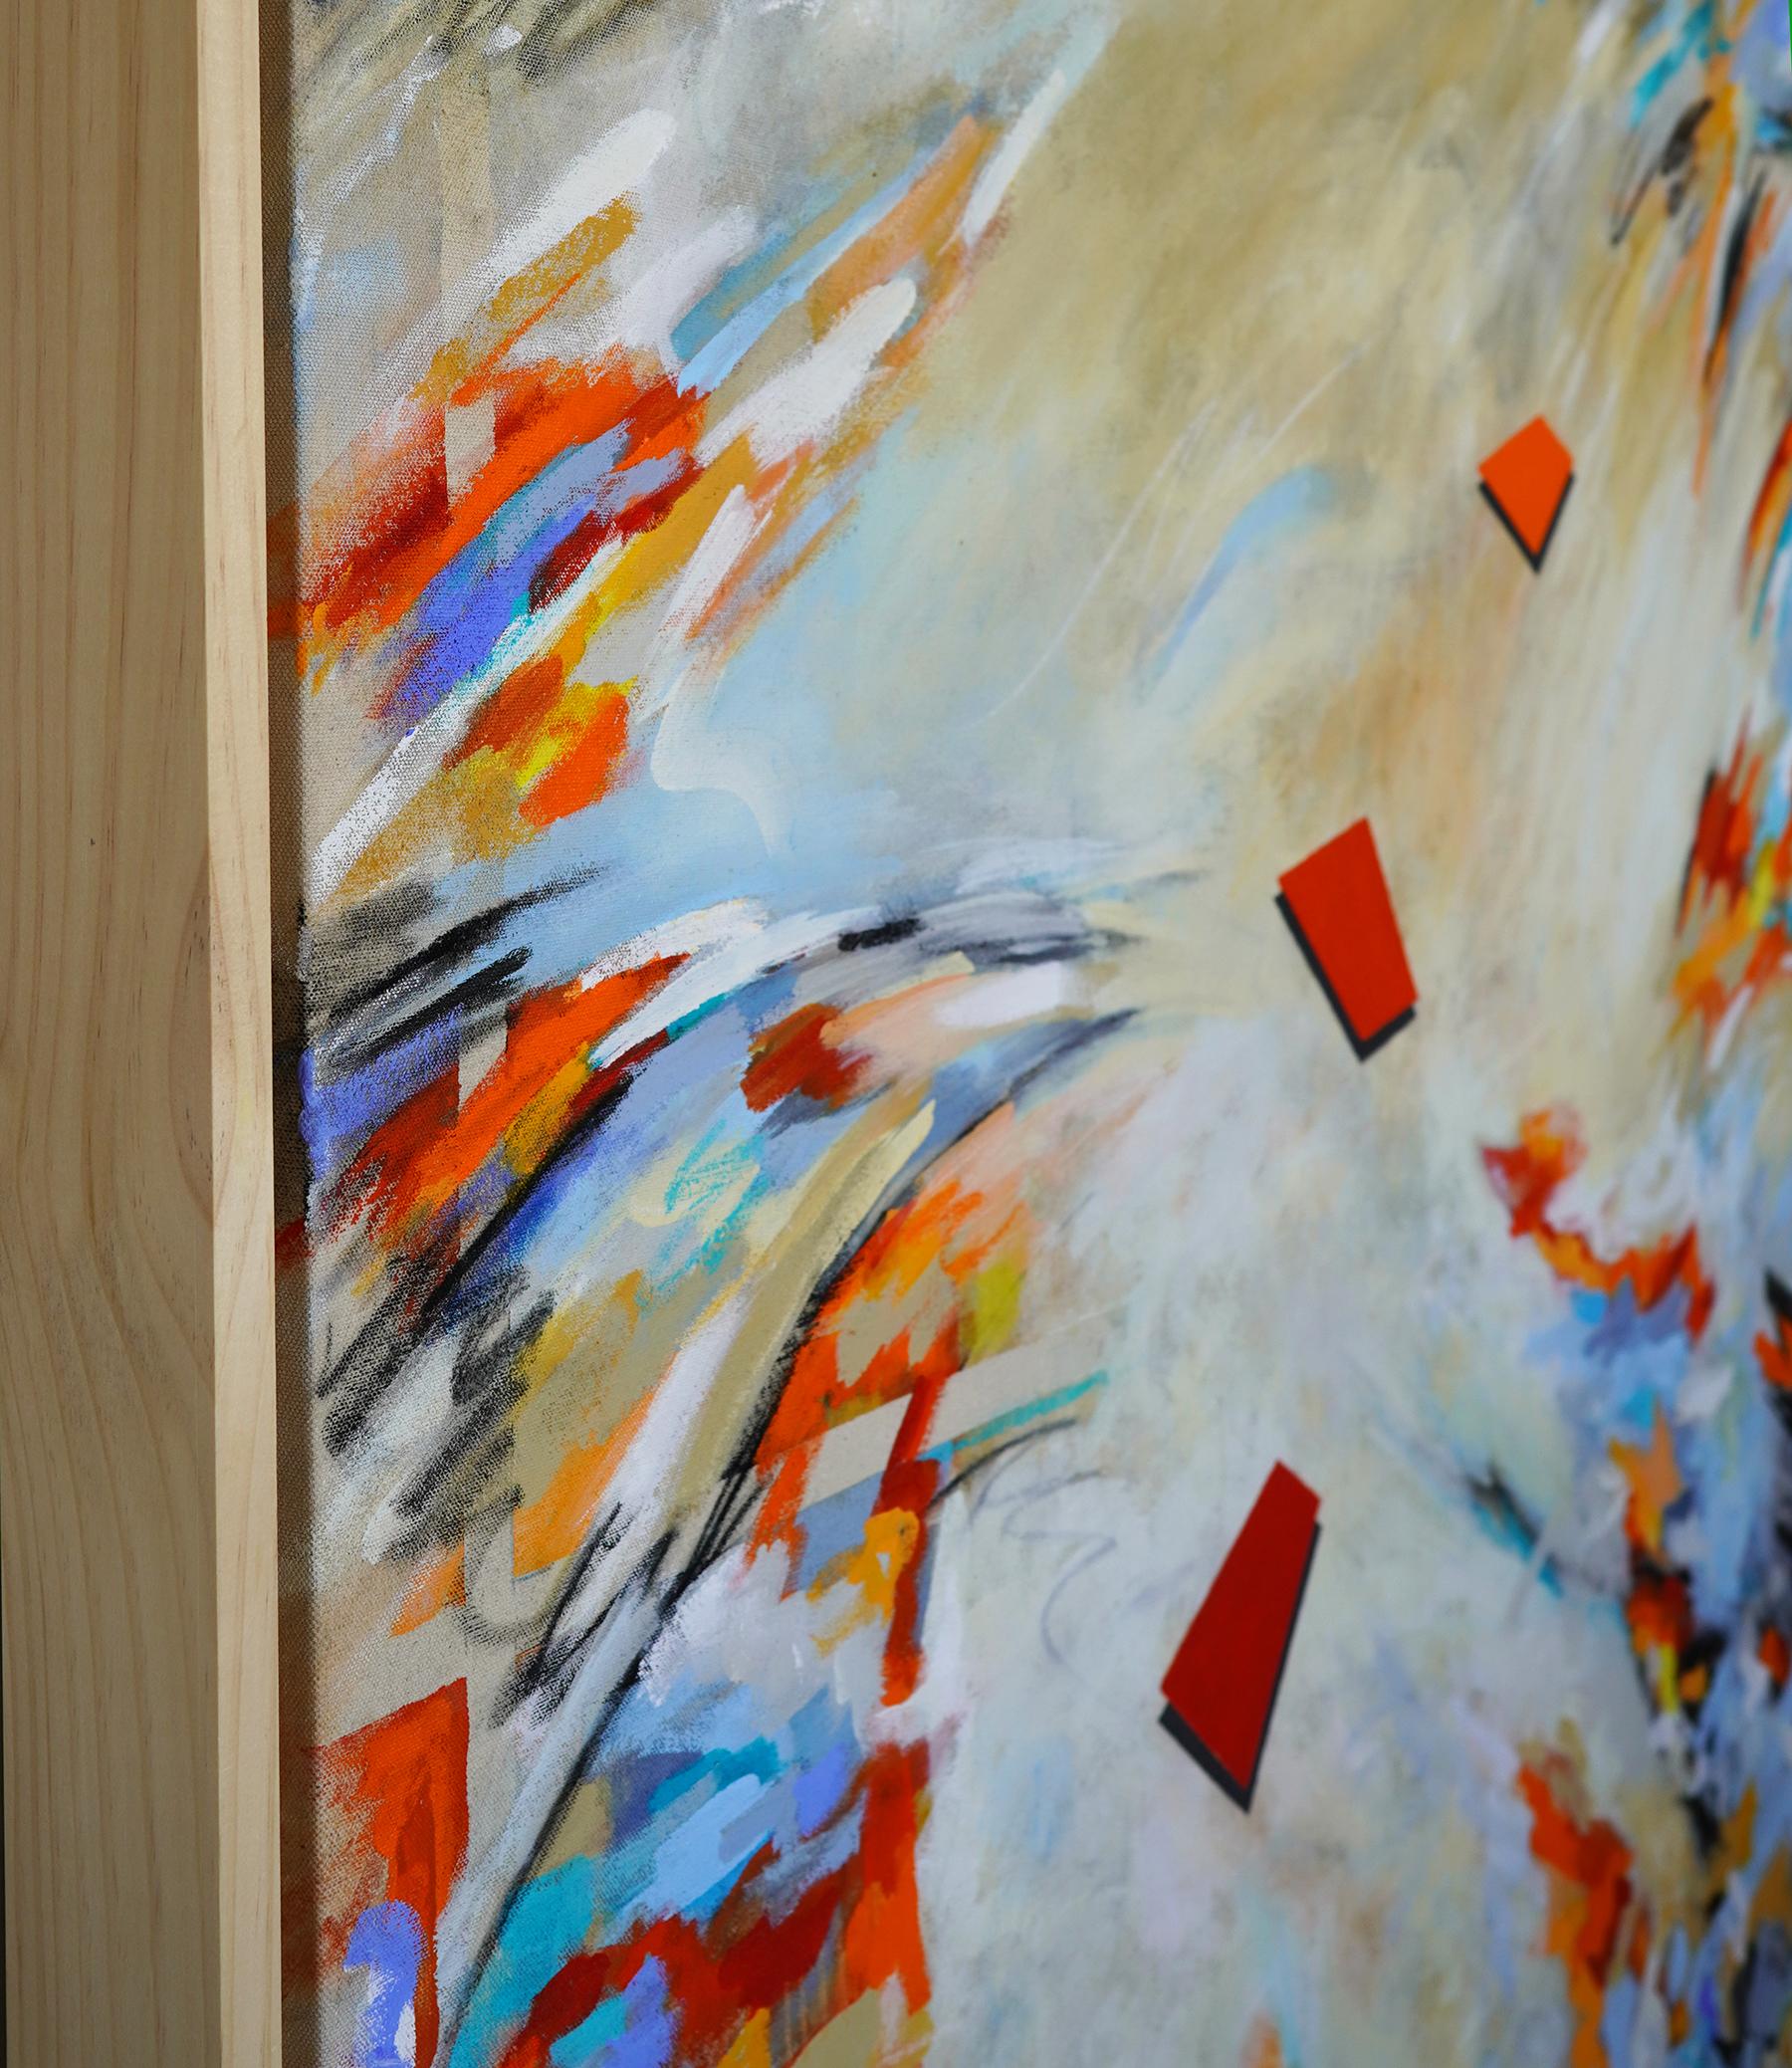 Chromatische Expression II. Abstraktes, modernes, farbenfrohes und kraftvolles Mixed Media Gemälde auf roher Leinwand mit schwebendem Naturholz gerahmt.   52H x52W x 2.5D

Entdecken Sie die lebendige Welt von Chromatic Expression, in der kühne